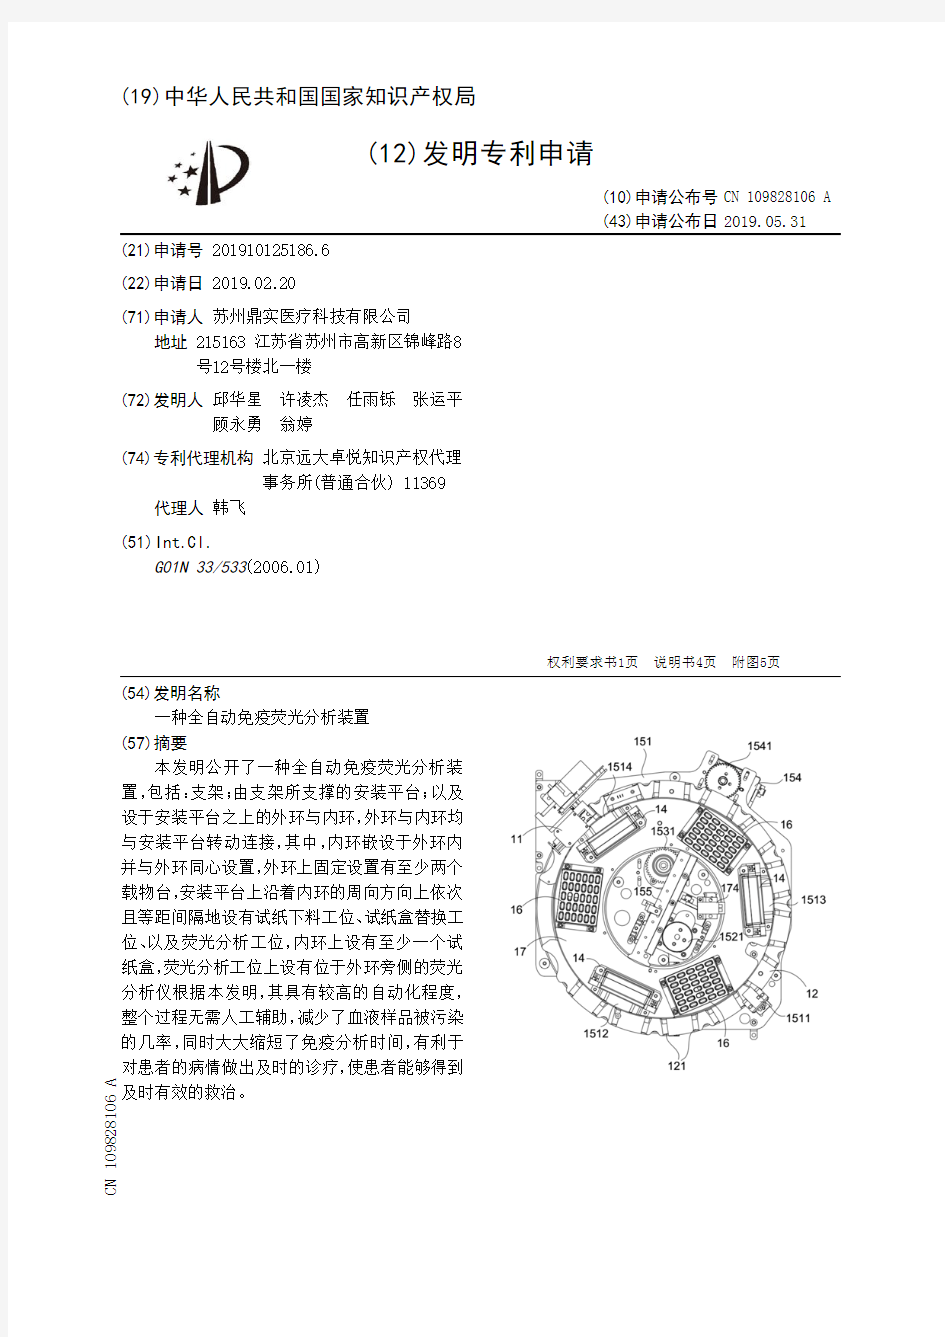 【CN109828106A】一种全自动免疫荧光分析装置【专利】